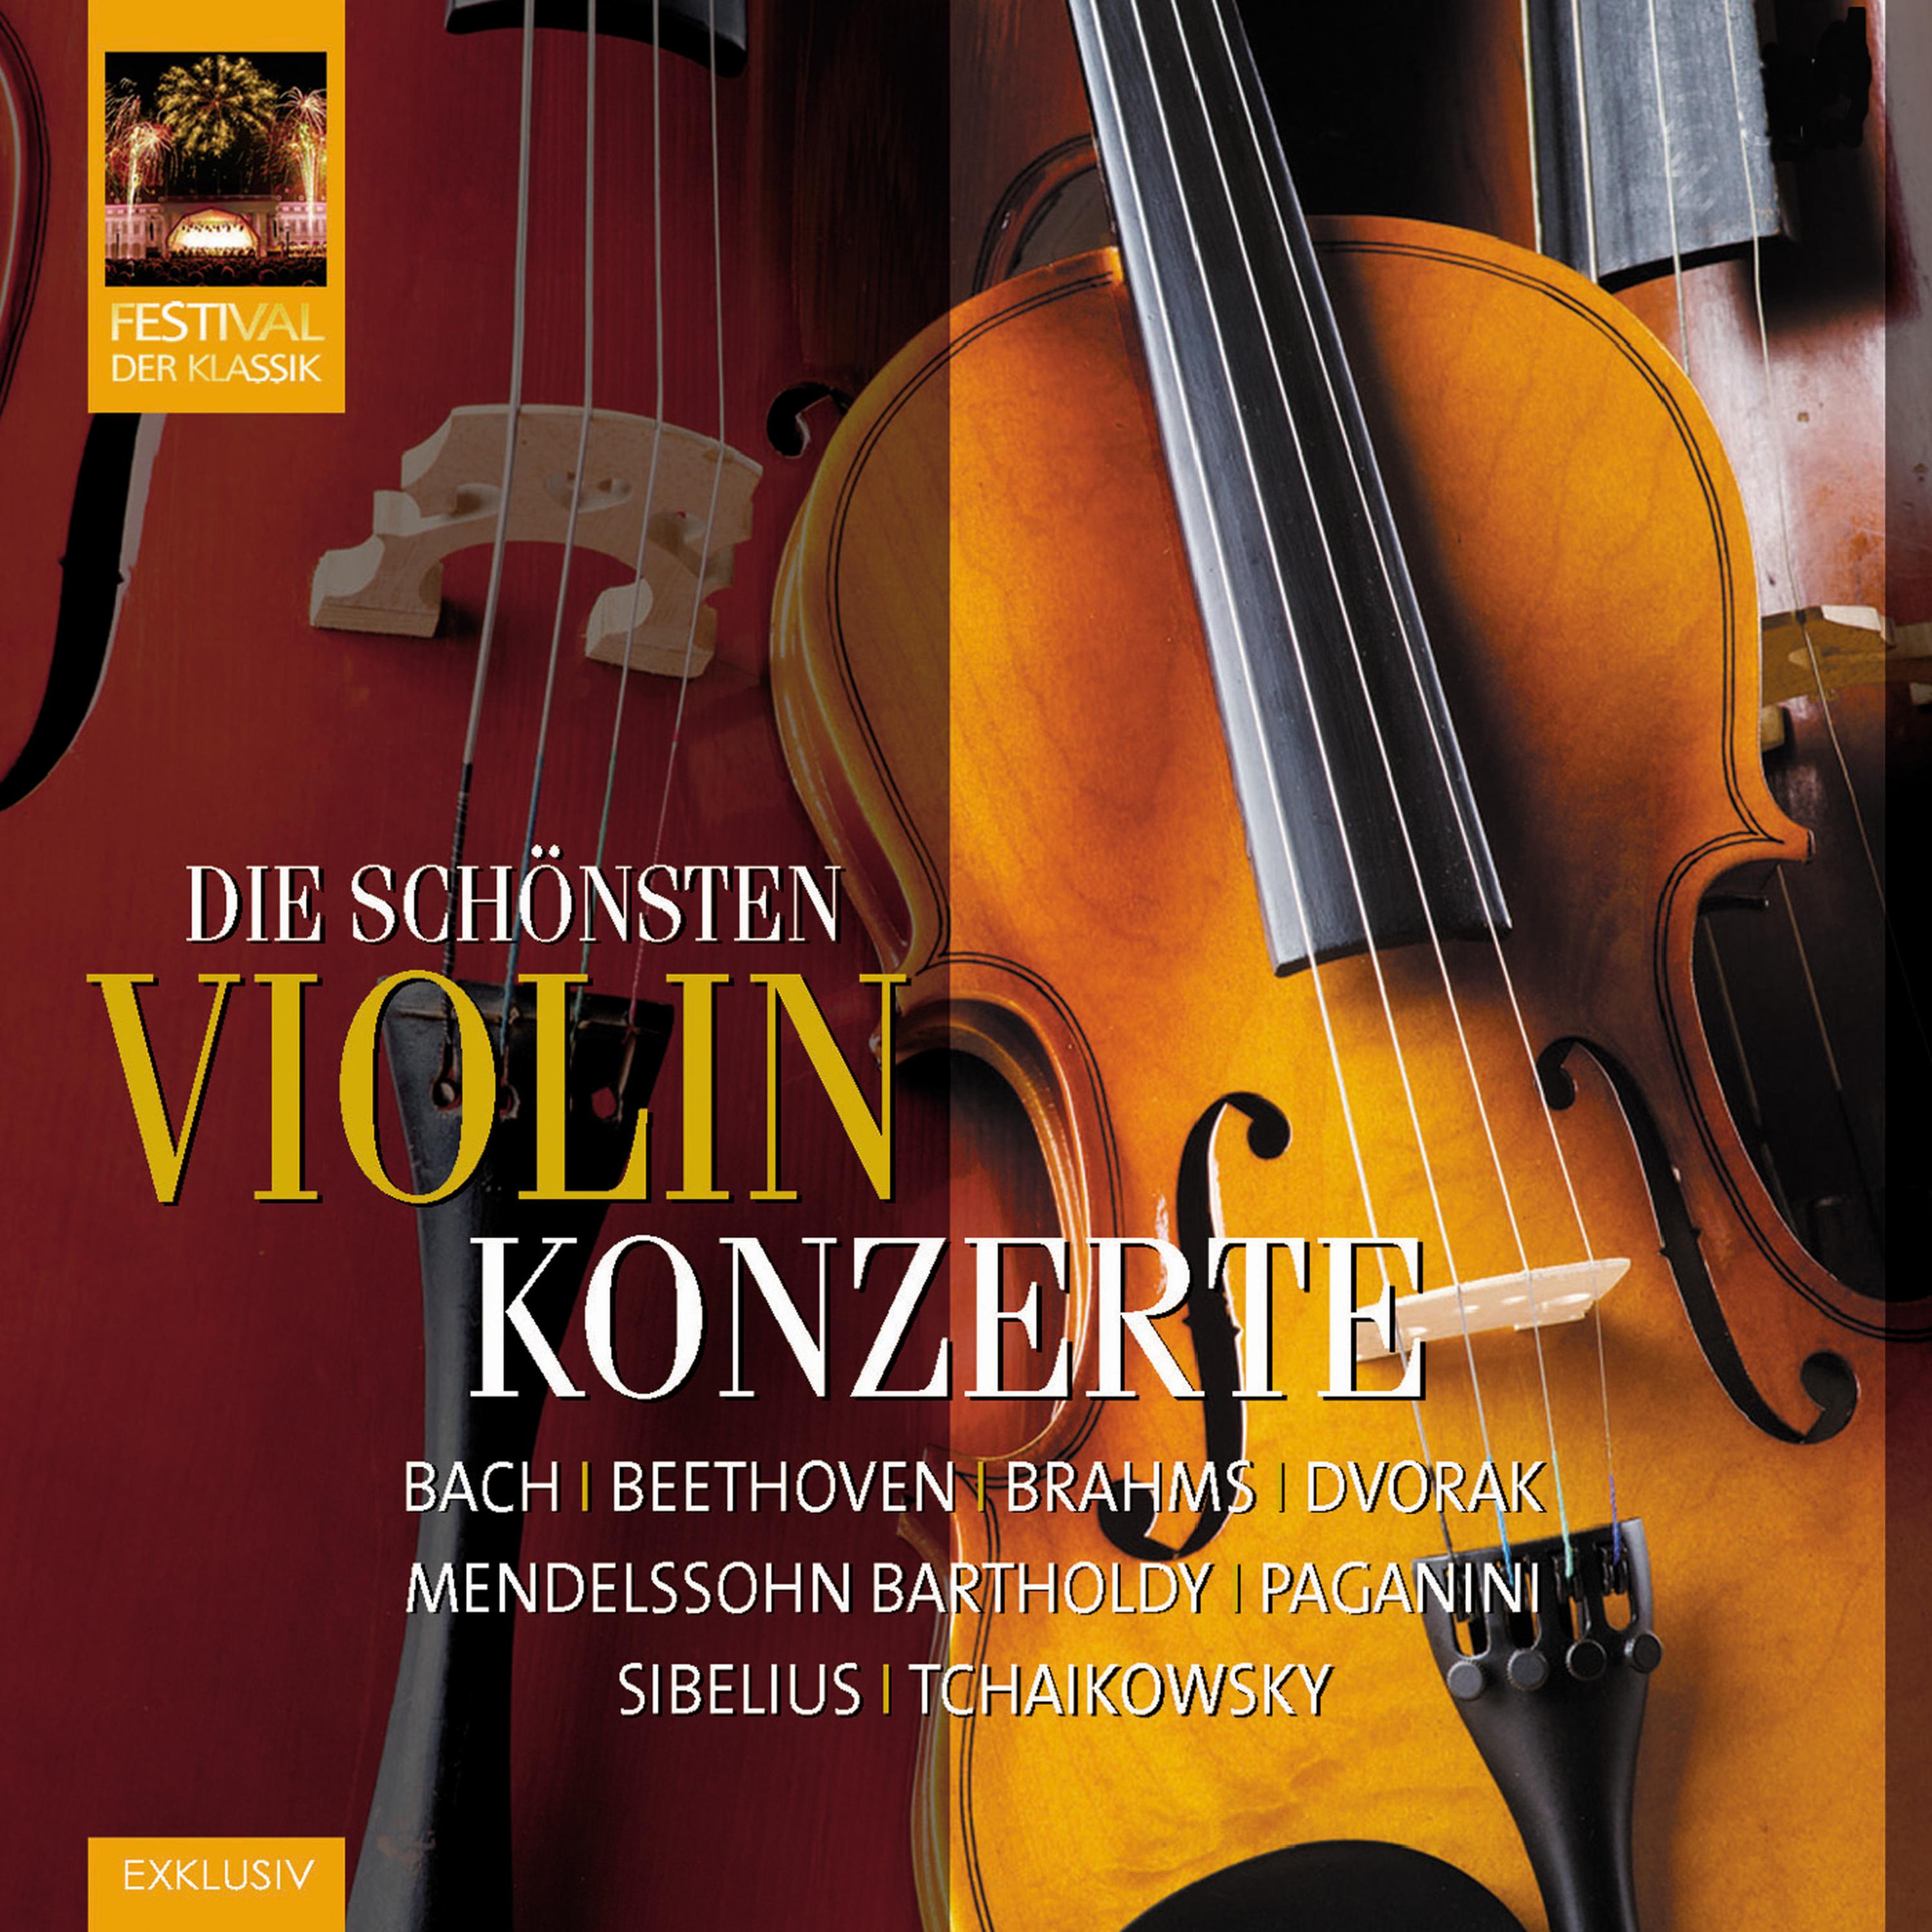 Violinkonzert in D Major, Op. 77: III. Allegro giocoso